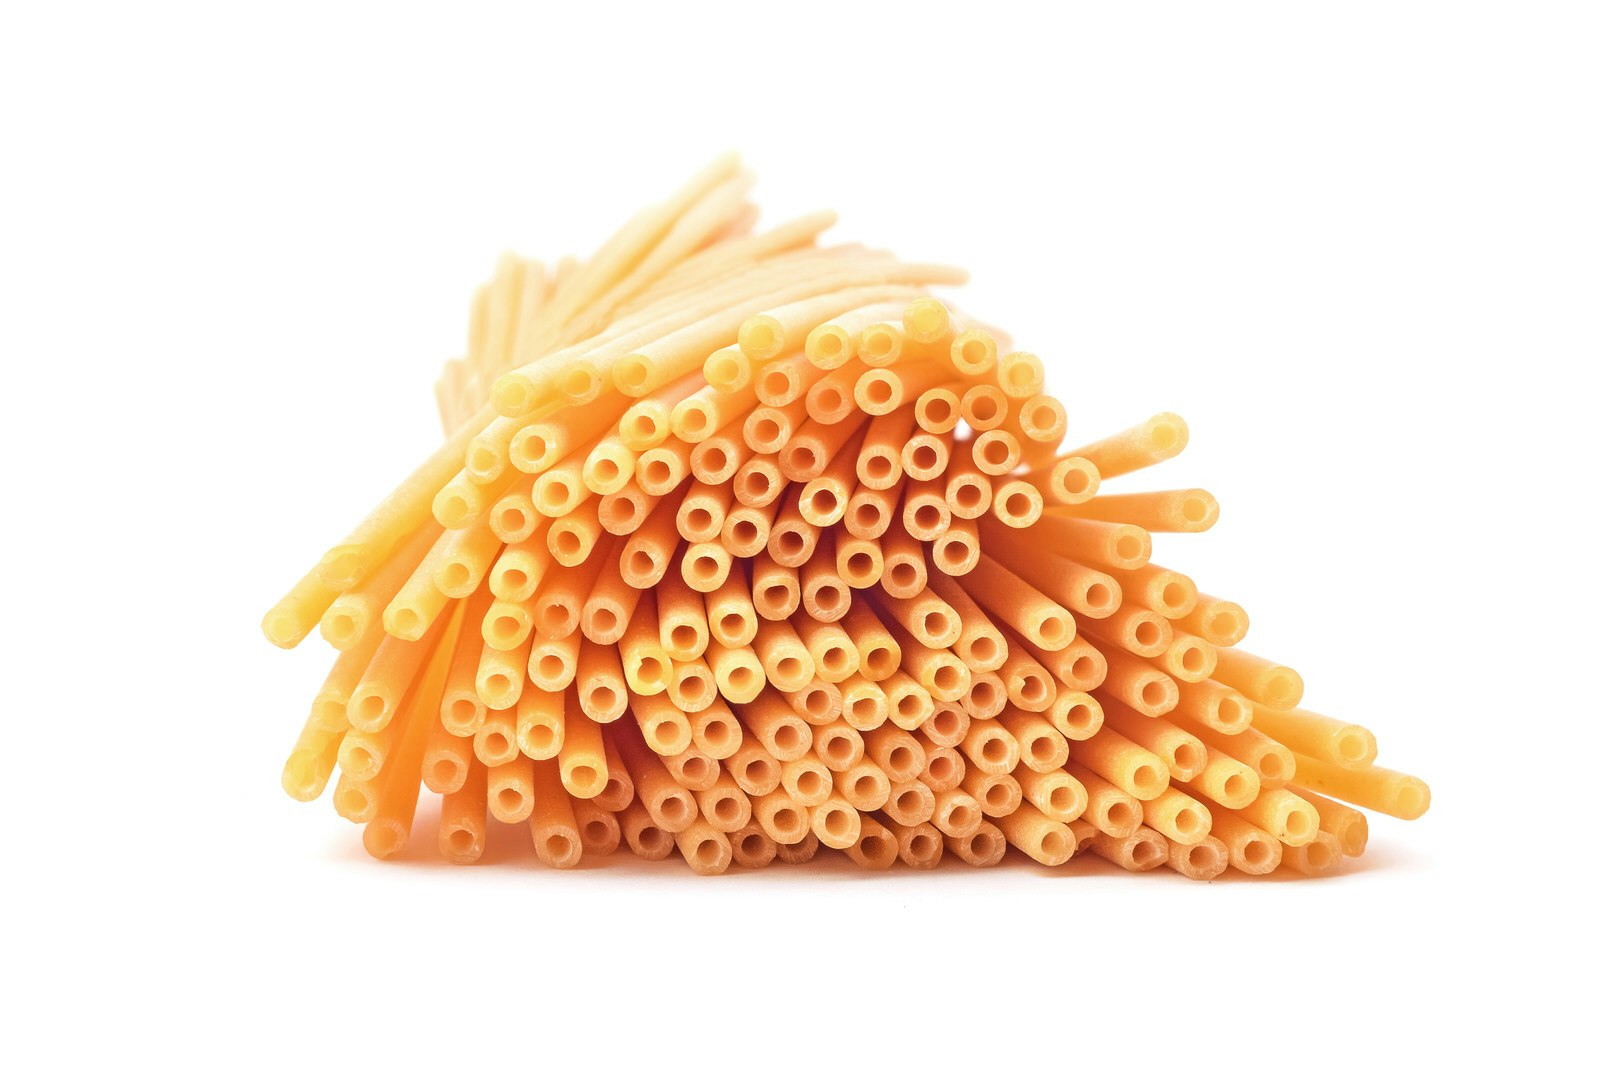 En bild av en näve bucatini-pastastrån mot en skarp vit bakgrund